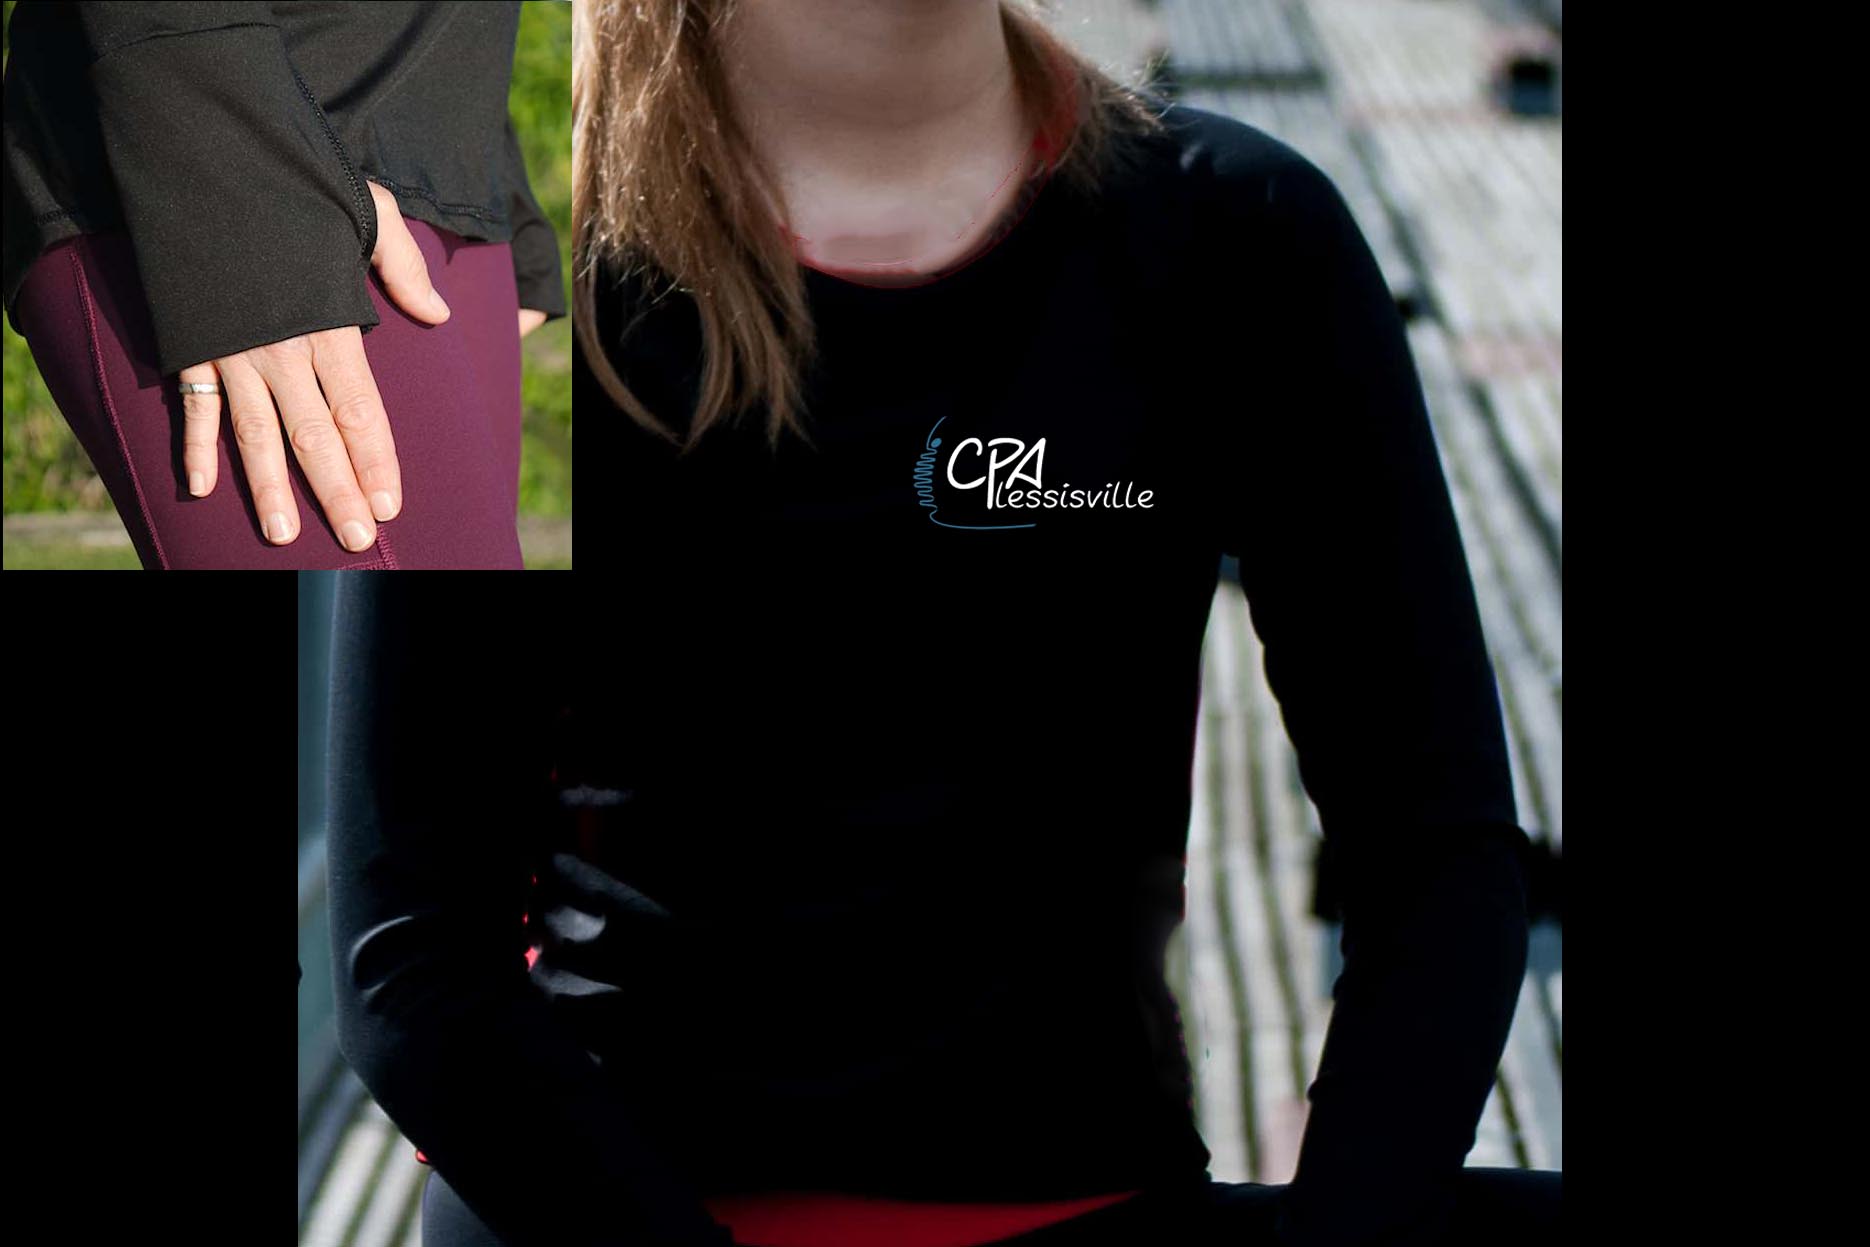 Vêtement Création Wissa fait 100% au Québec : Chandail à manches longues noir à poignet mitaine - CPA Plessisville